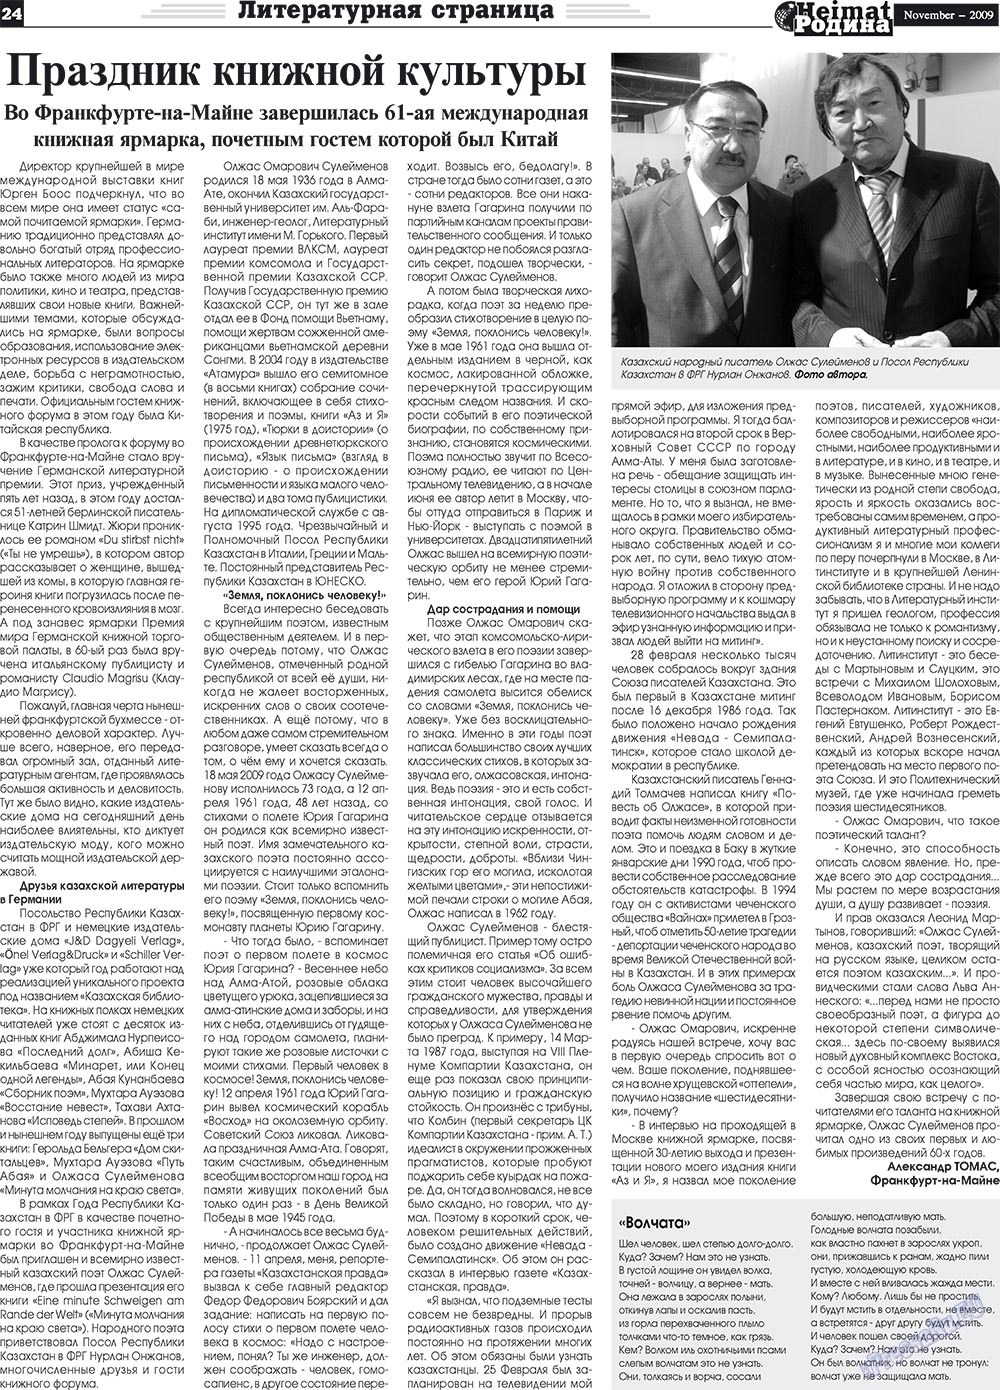 Heimat-Родина (газета). 2009 год, номер 11, стр. 24